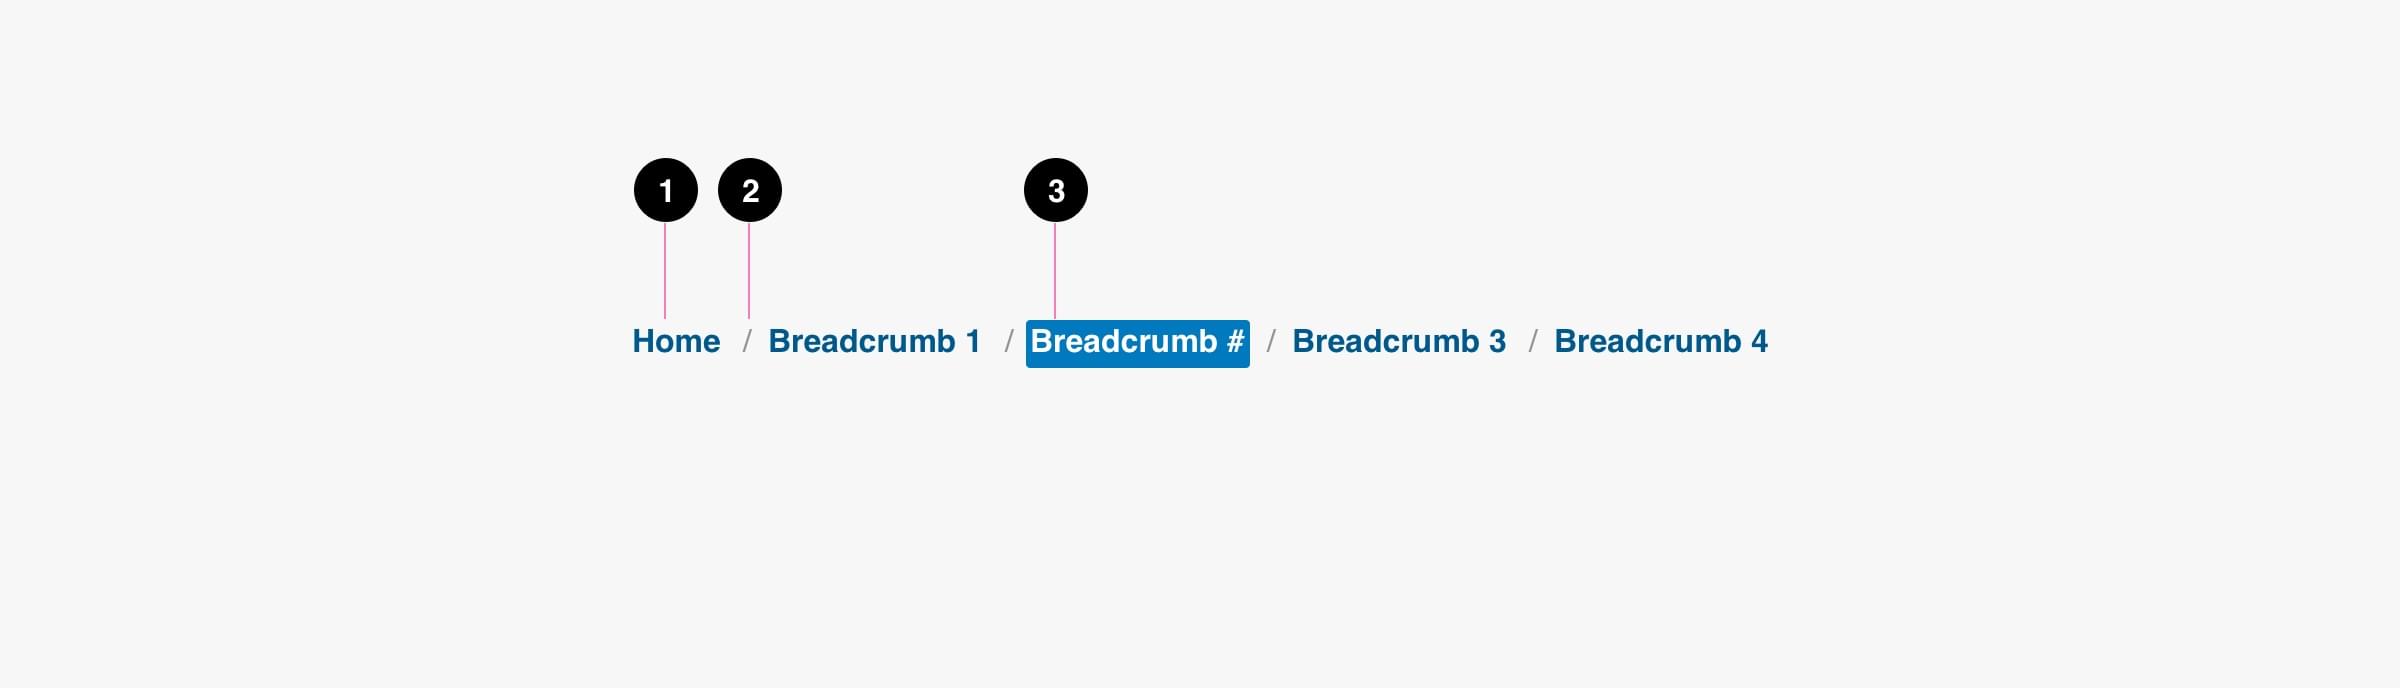 Breadcrumbs Anatomy Image